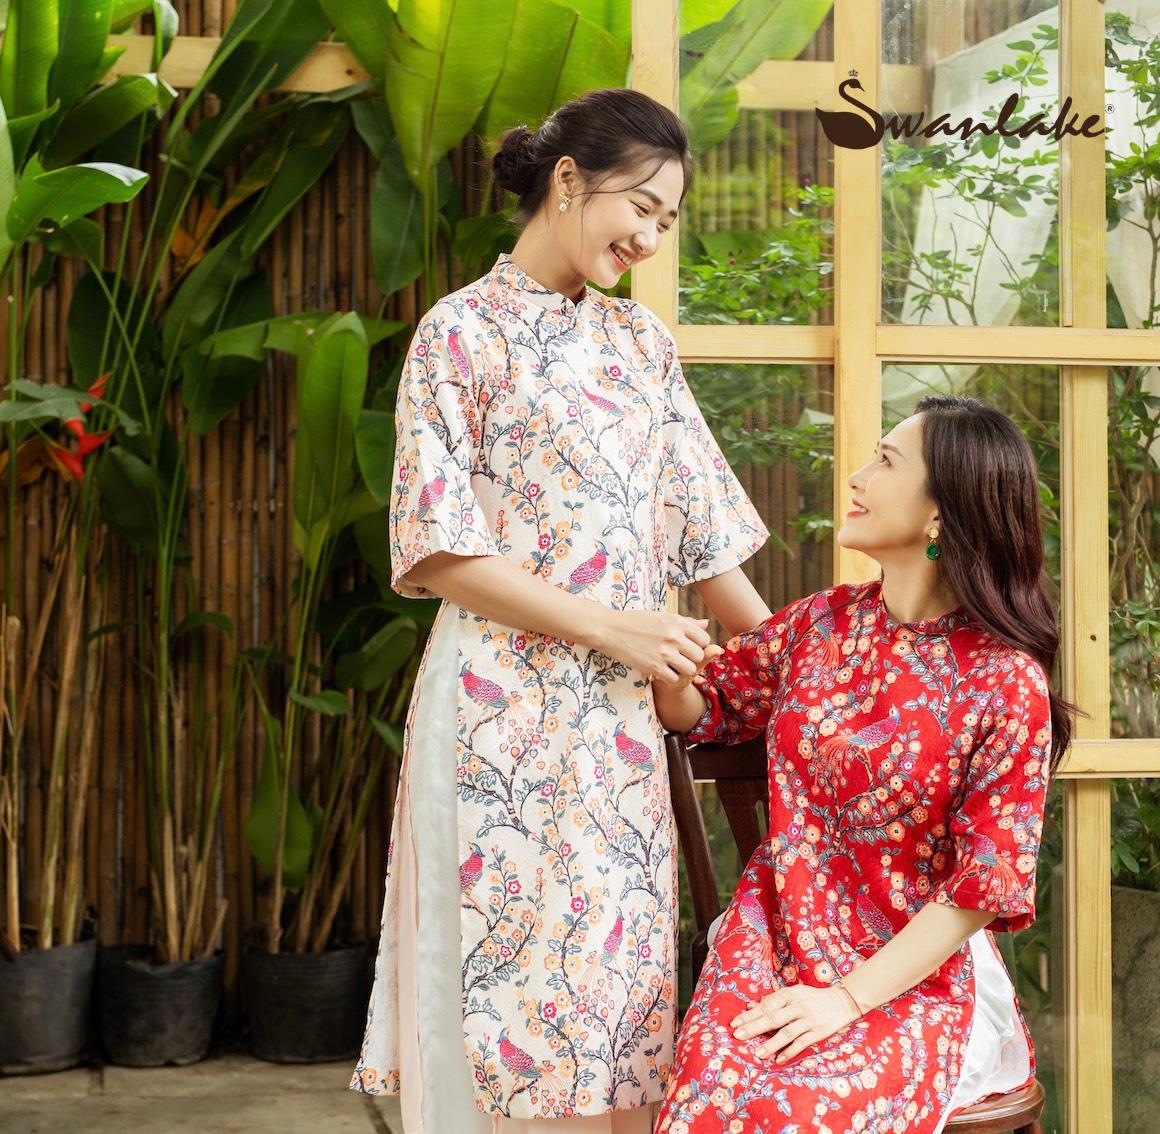 Swanlake chinh phục phụ nữ Việt bằng vẻ đẹp “Thiên nga” - Ảnh 1.